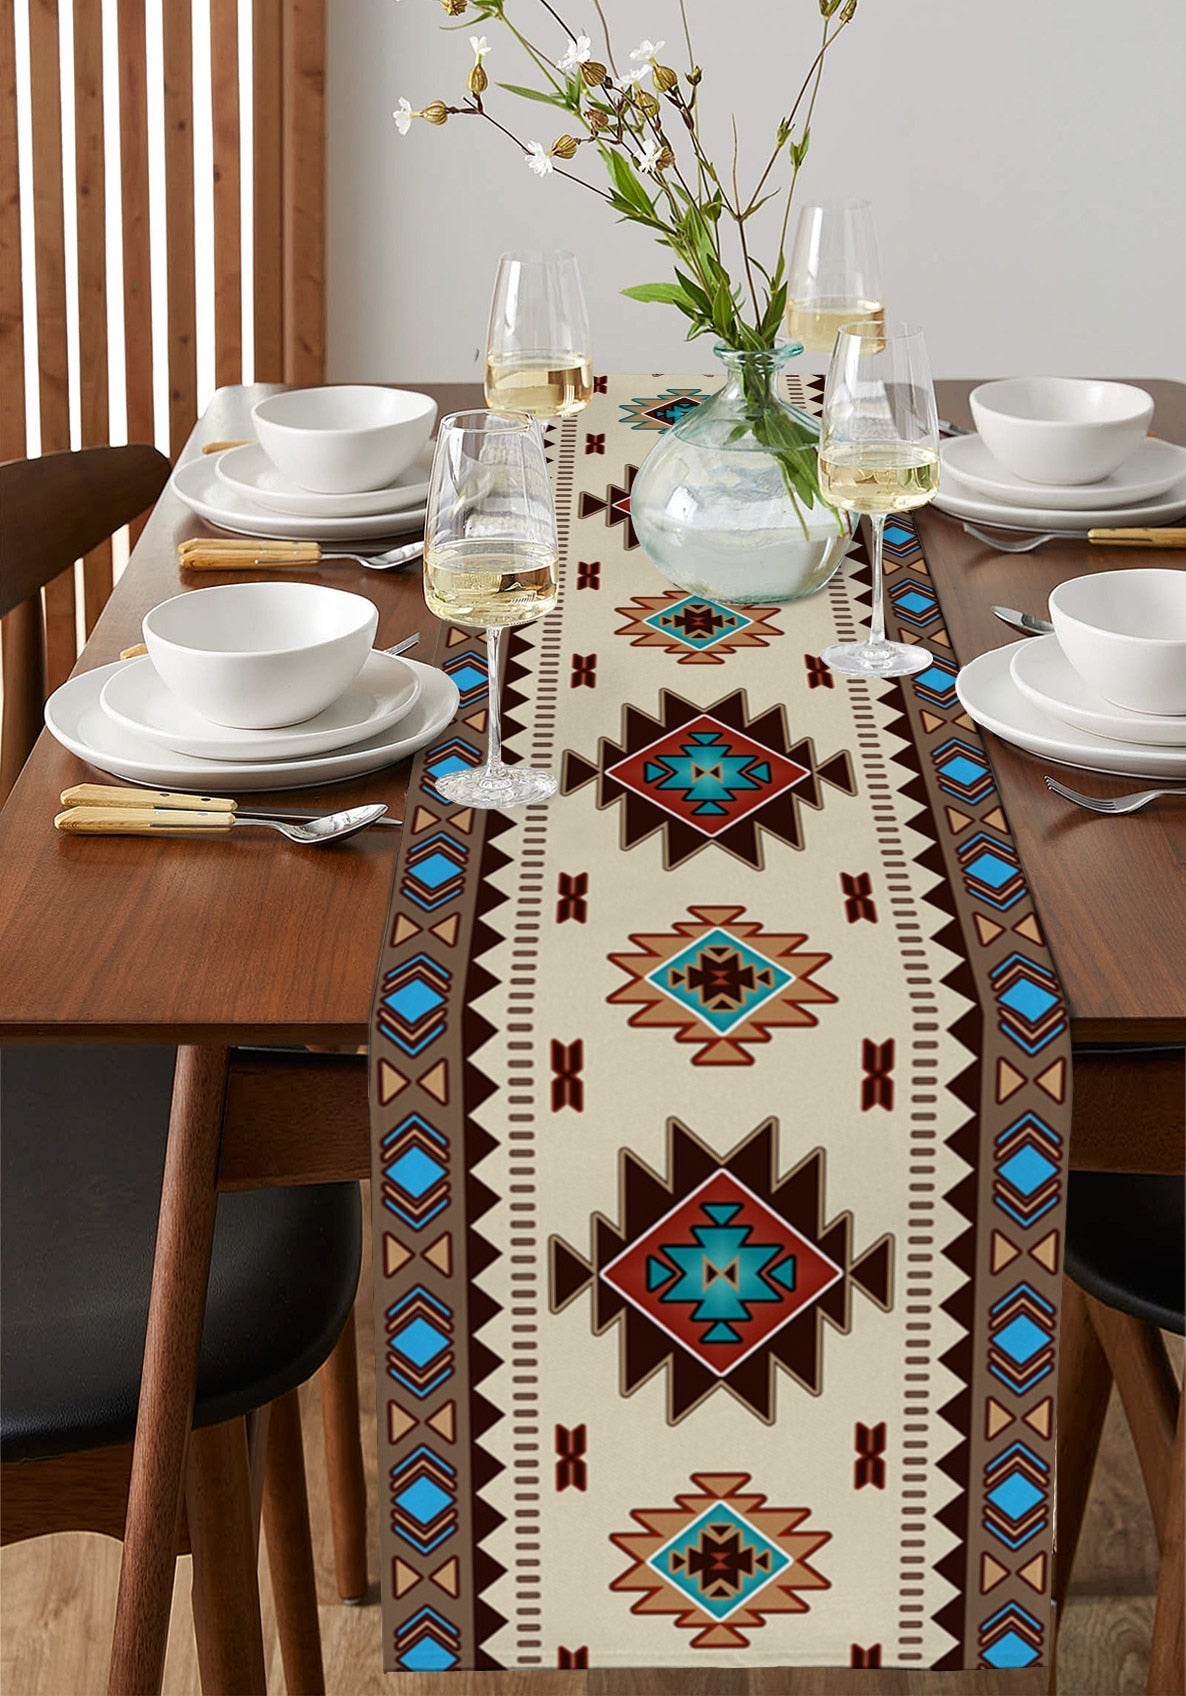 보헤미안 민족 기하학 린넨 테이블 주자 홀리데이 파티 장식 재사용 가능한 테이블 주자 식탁 웨딩 장식